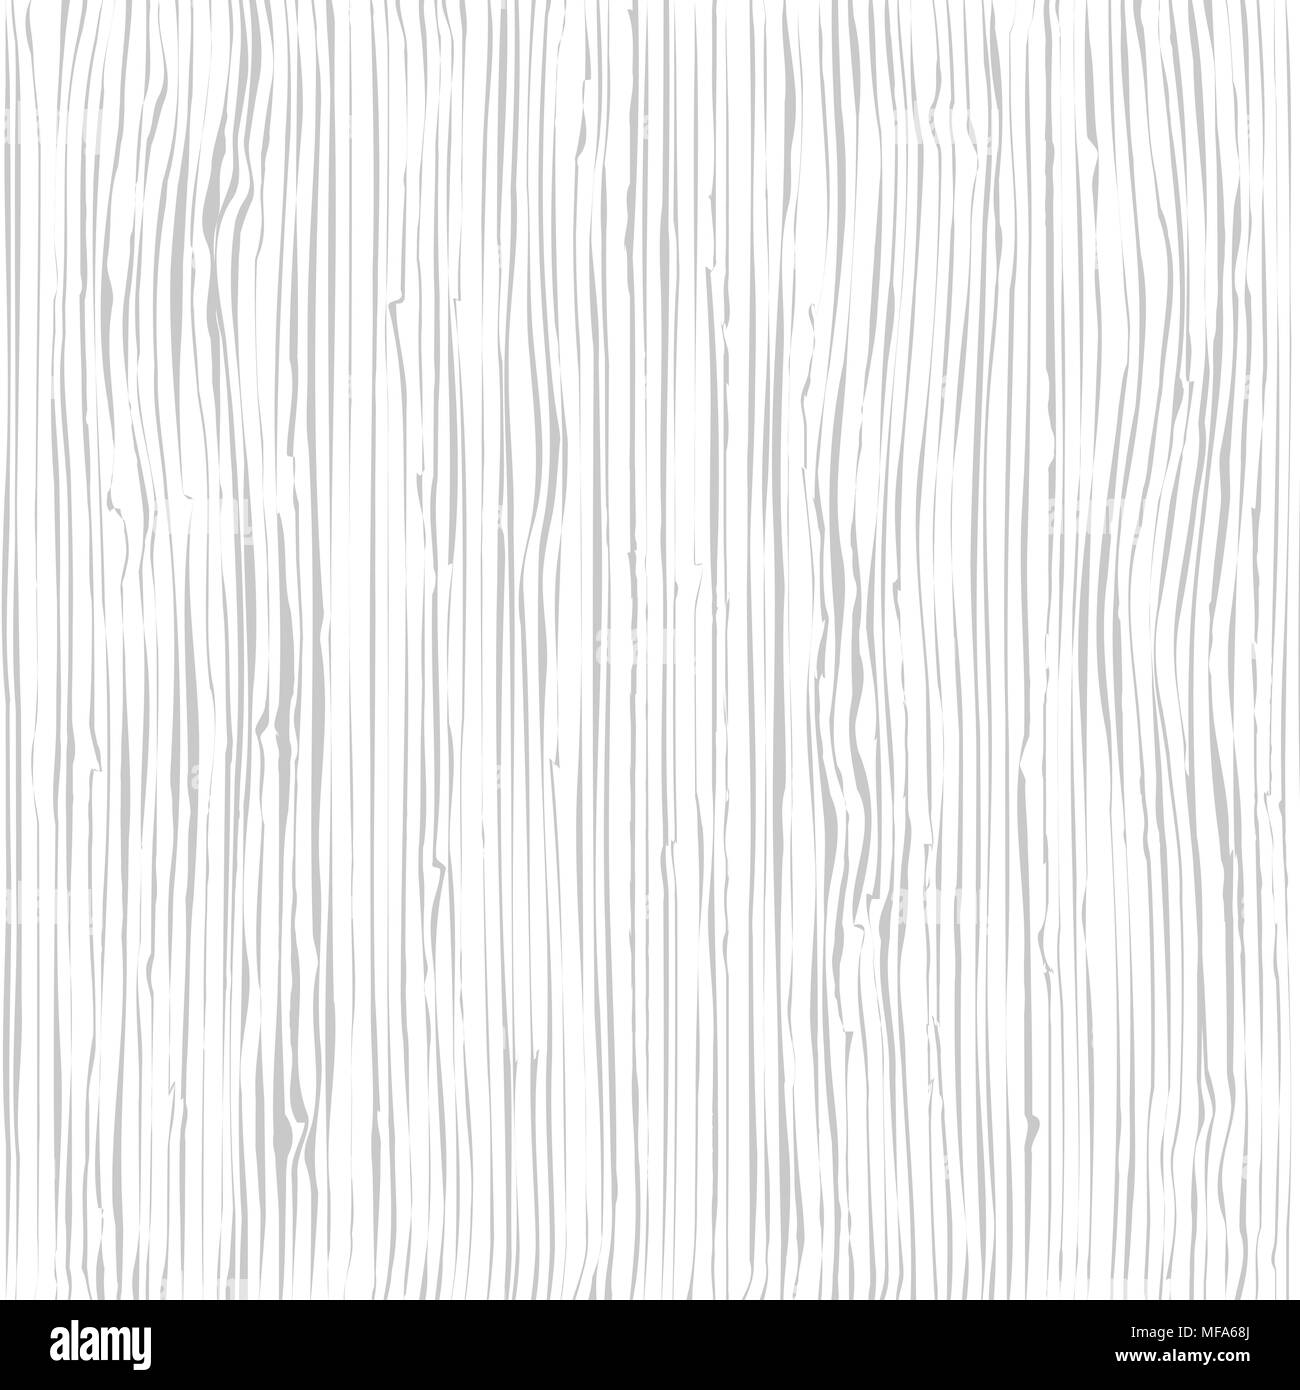 La texture en bois. Wood grain pattern. Arrière-plan de la structure des fibres, vector illustration Illustration de Vecteur